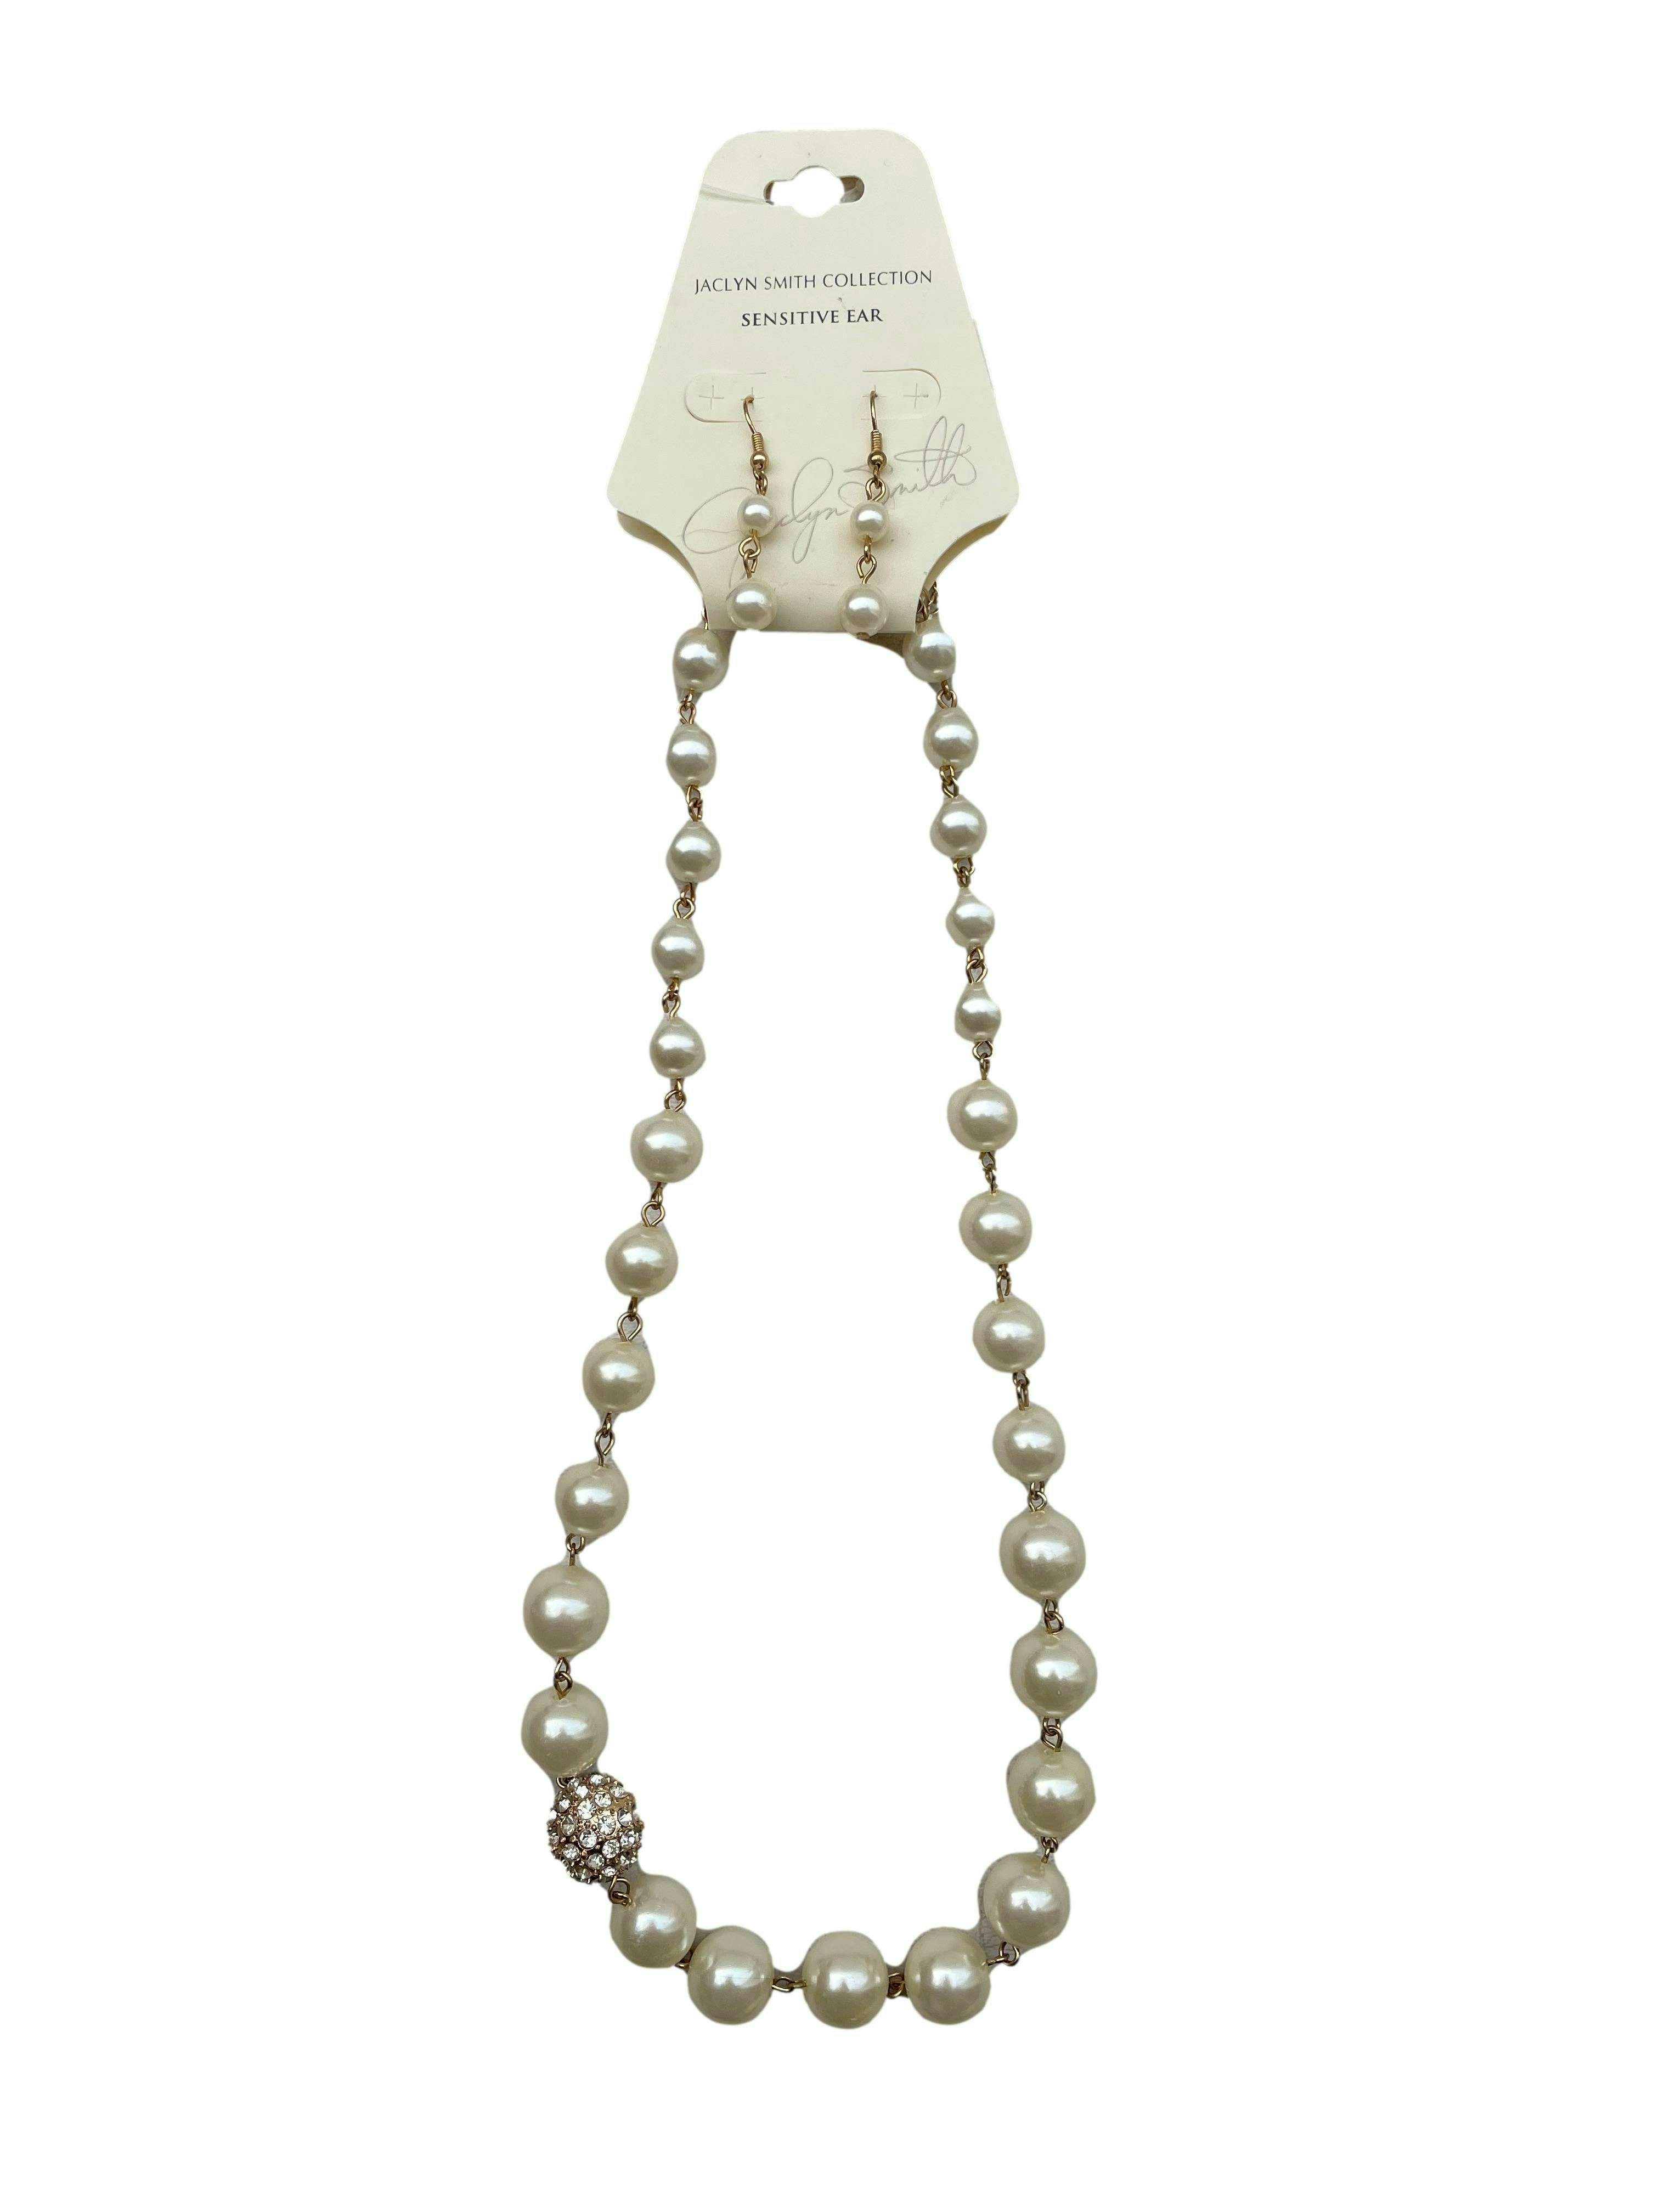 Set Jacylin Smith collar y aretes de perlas , dije con cristales. Medidas collar 50cm, aretes 3cm.